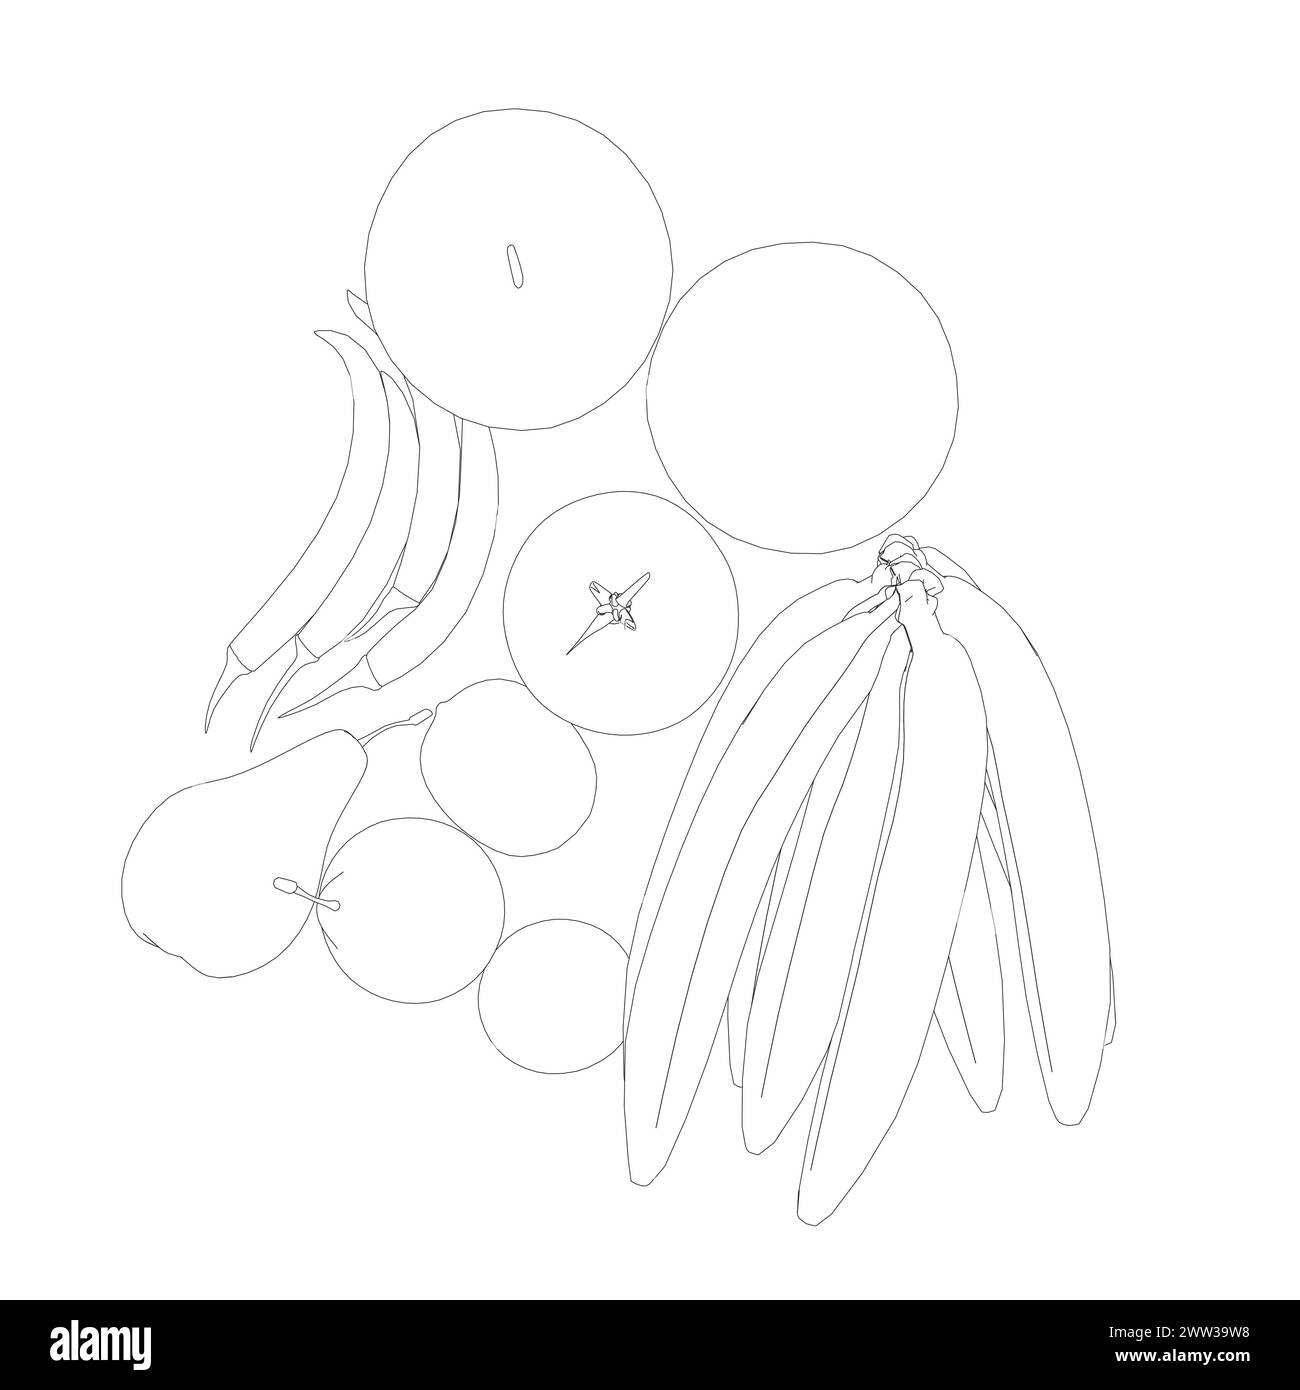 Contorno della frutta: Banane, mele, pere, peperoni, pomodori con linee nere isolate su sfondo bianco. Illustrazione vettoriale. Illustrazione Vettoriale